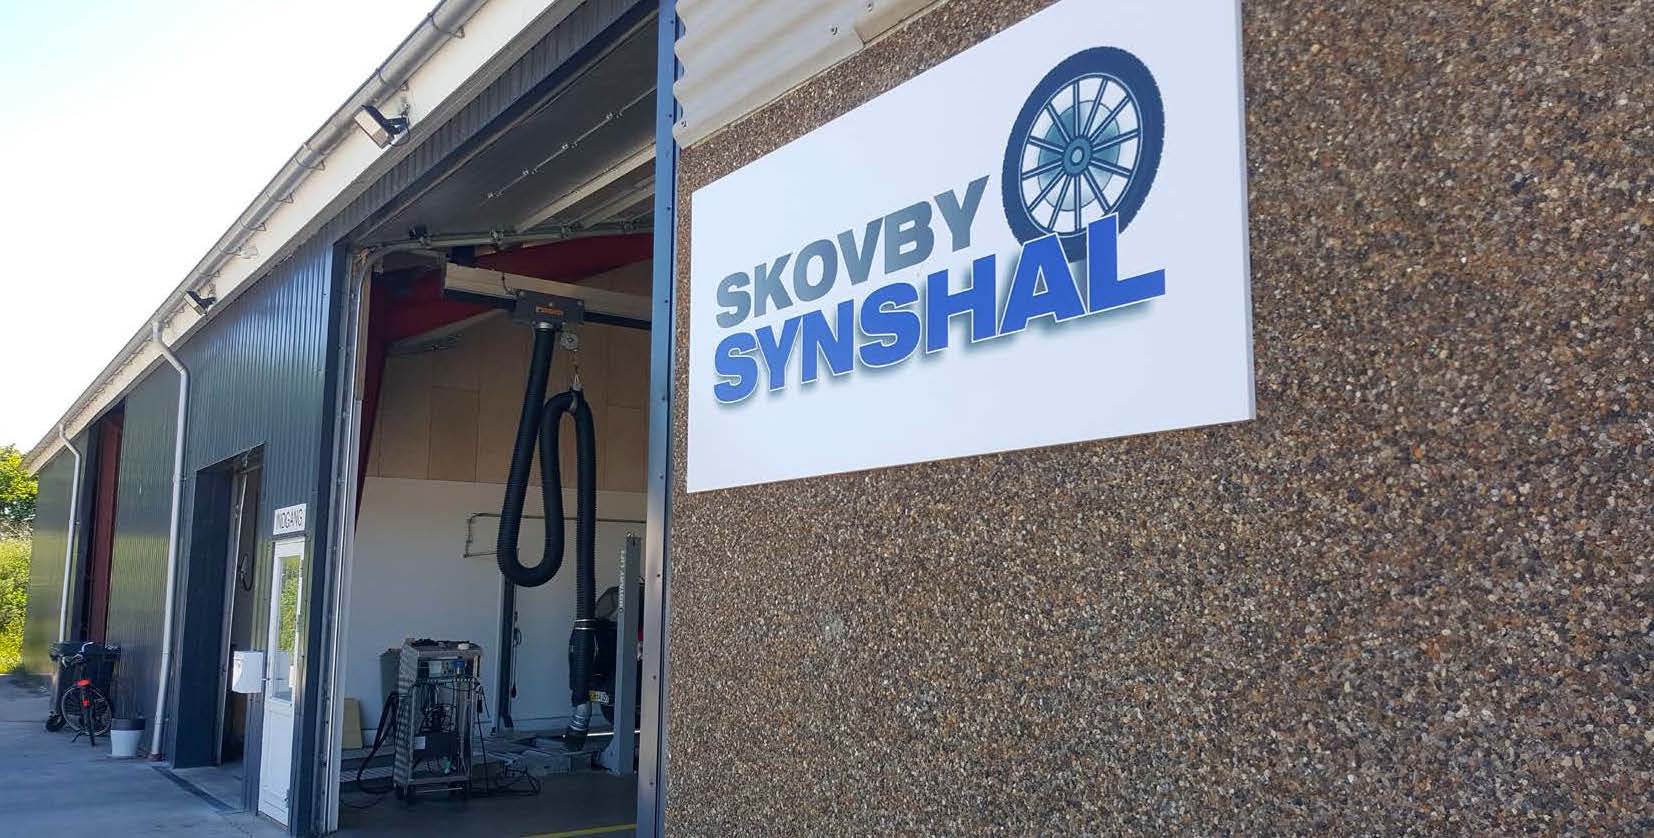 Valdomų spausdinimo paslaugų sprendimas "Skovby Synshal" įmonėje